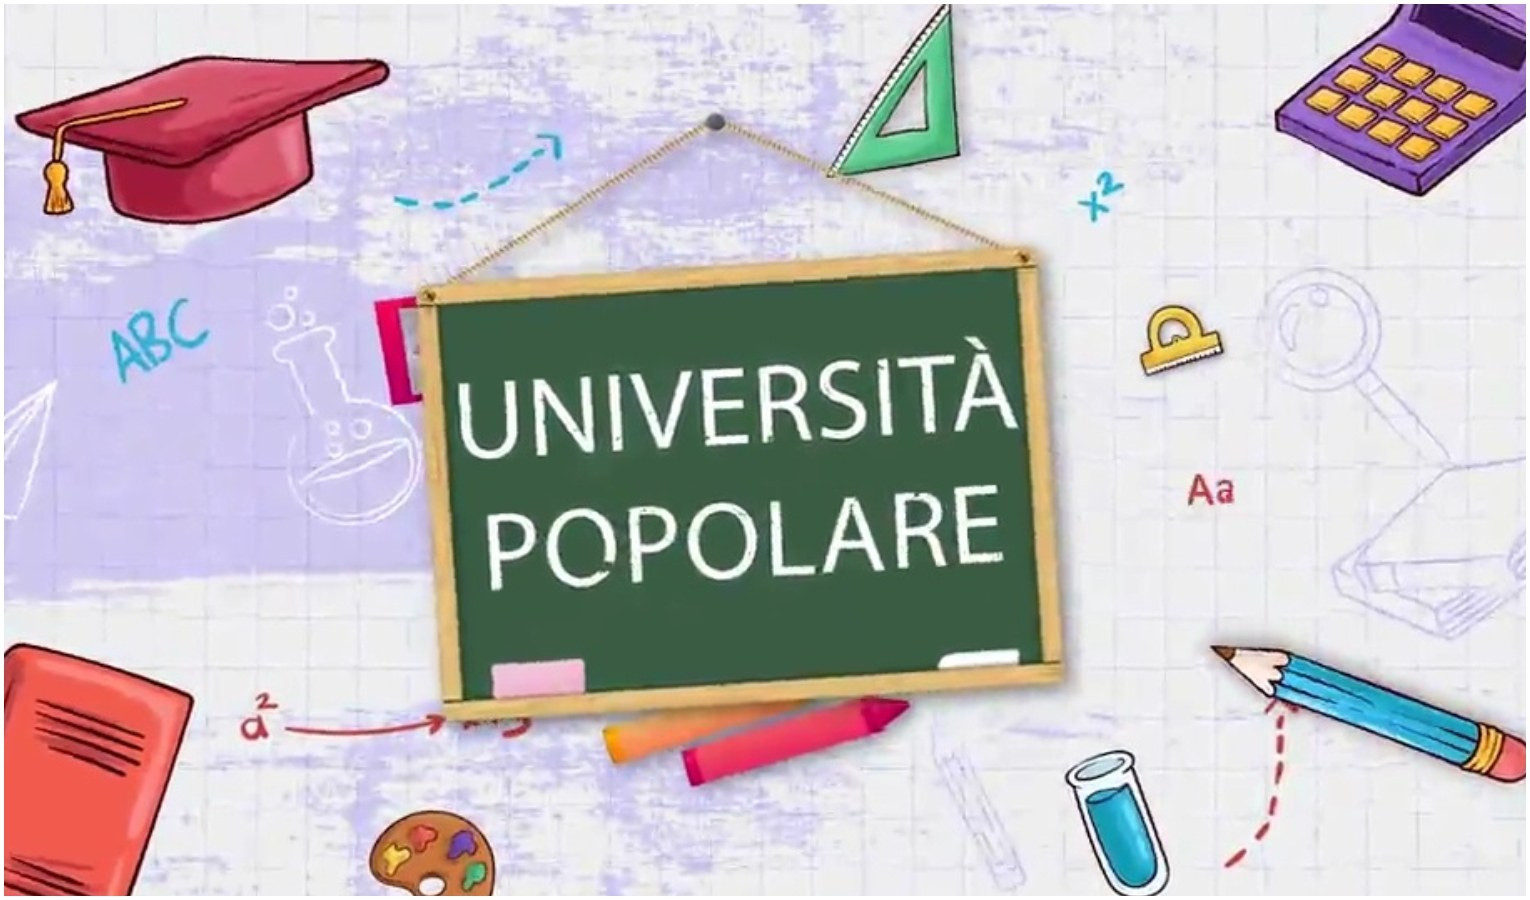 Università popolare - La parola dialetto